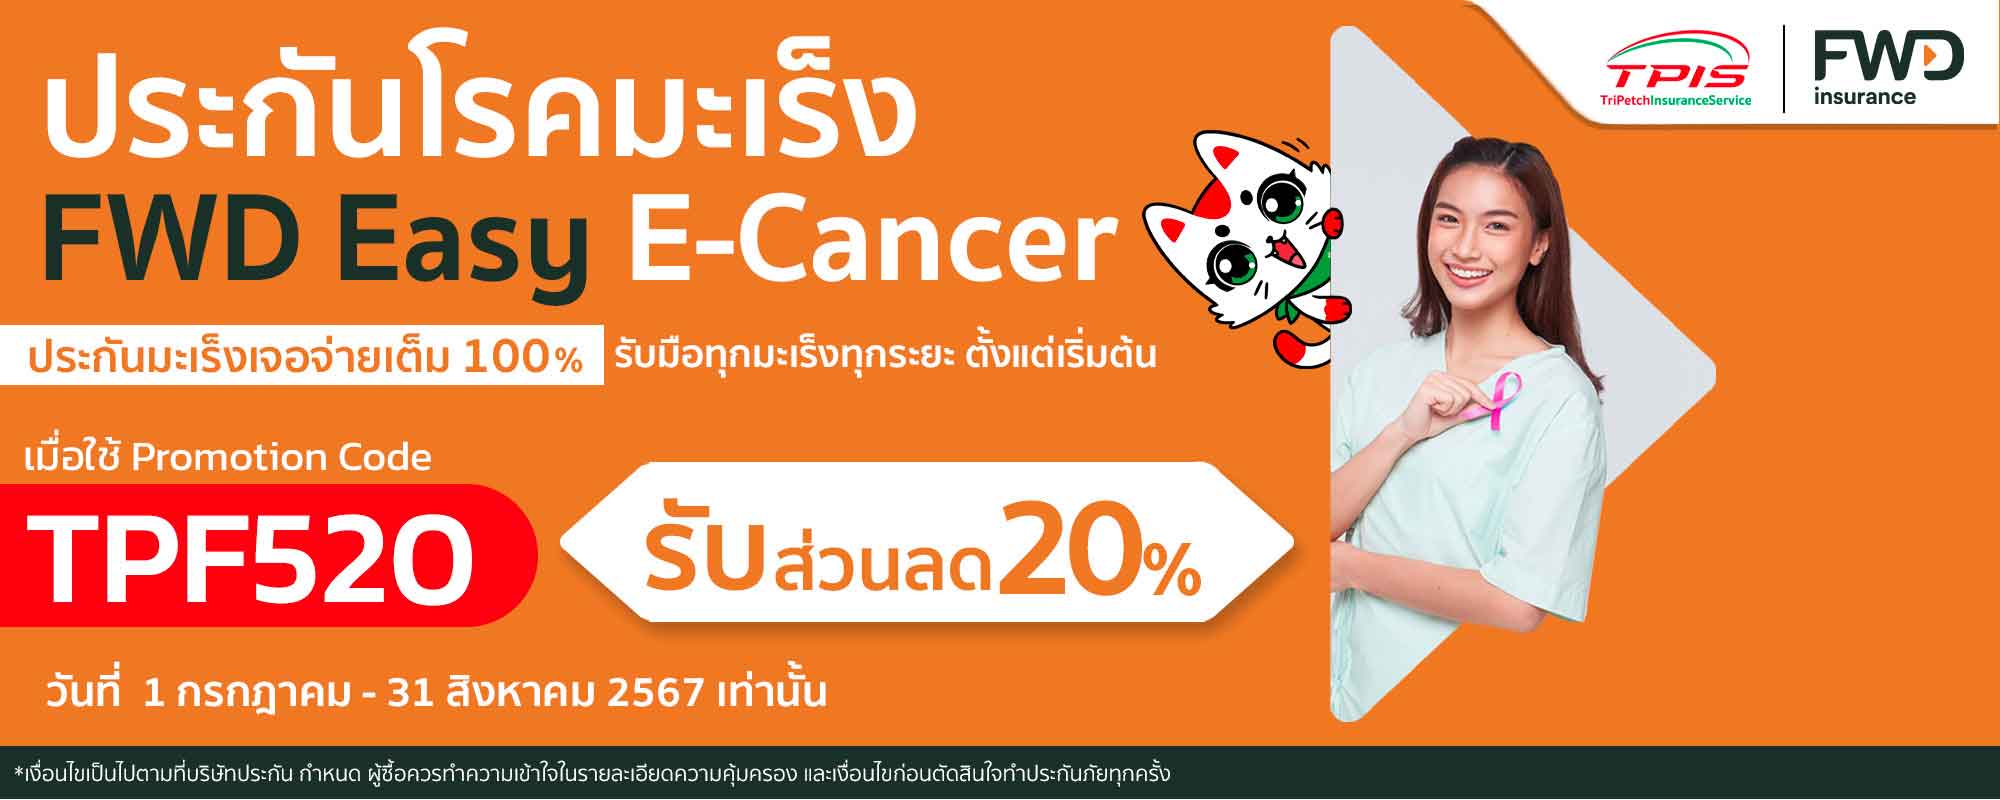 ประกันมะเร็งออนไลน์ Easy E-CANCER ประกันมะเร็ง FWD